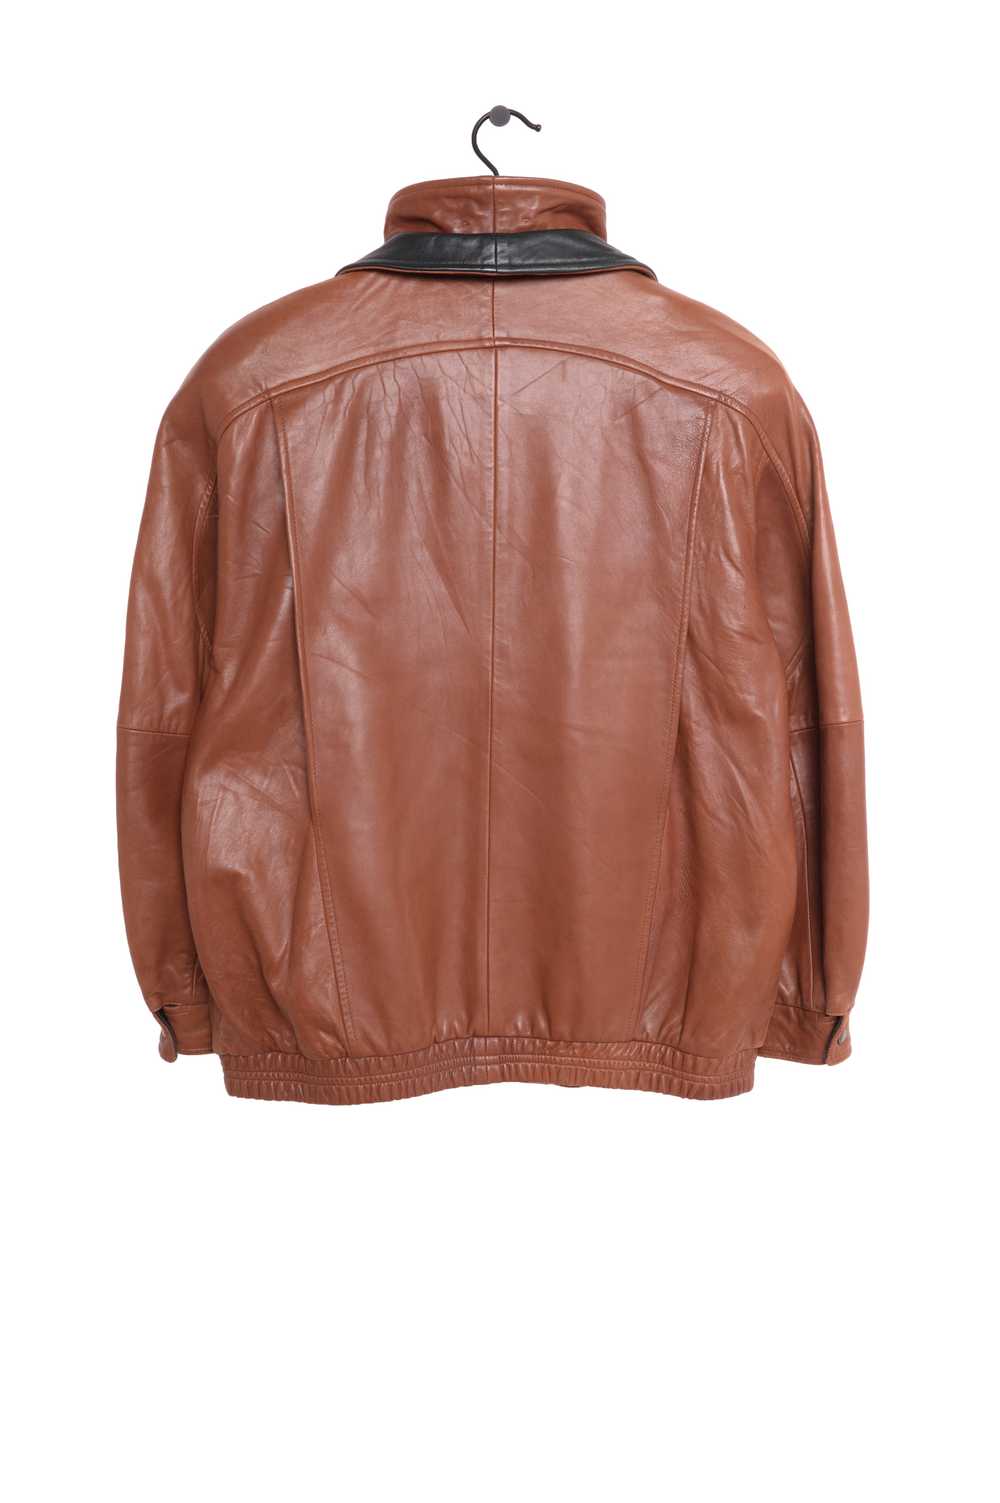 1990s Soft Lambskin Leather Jacket - image 2